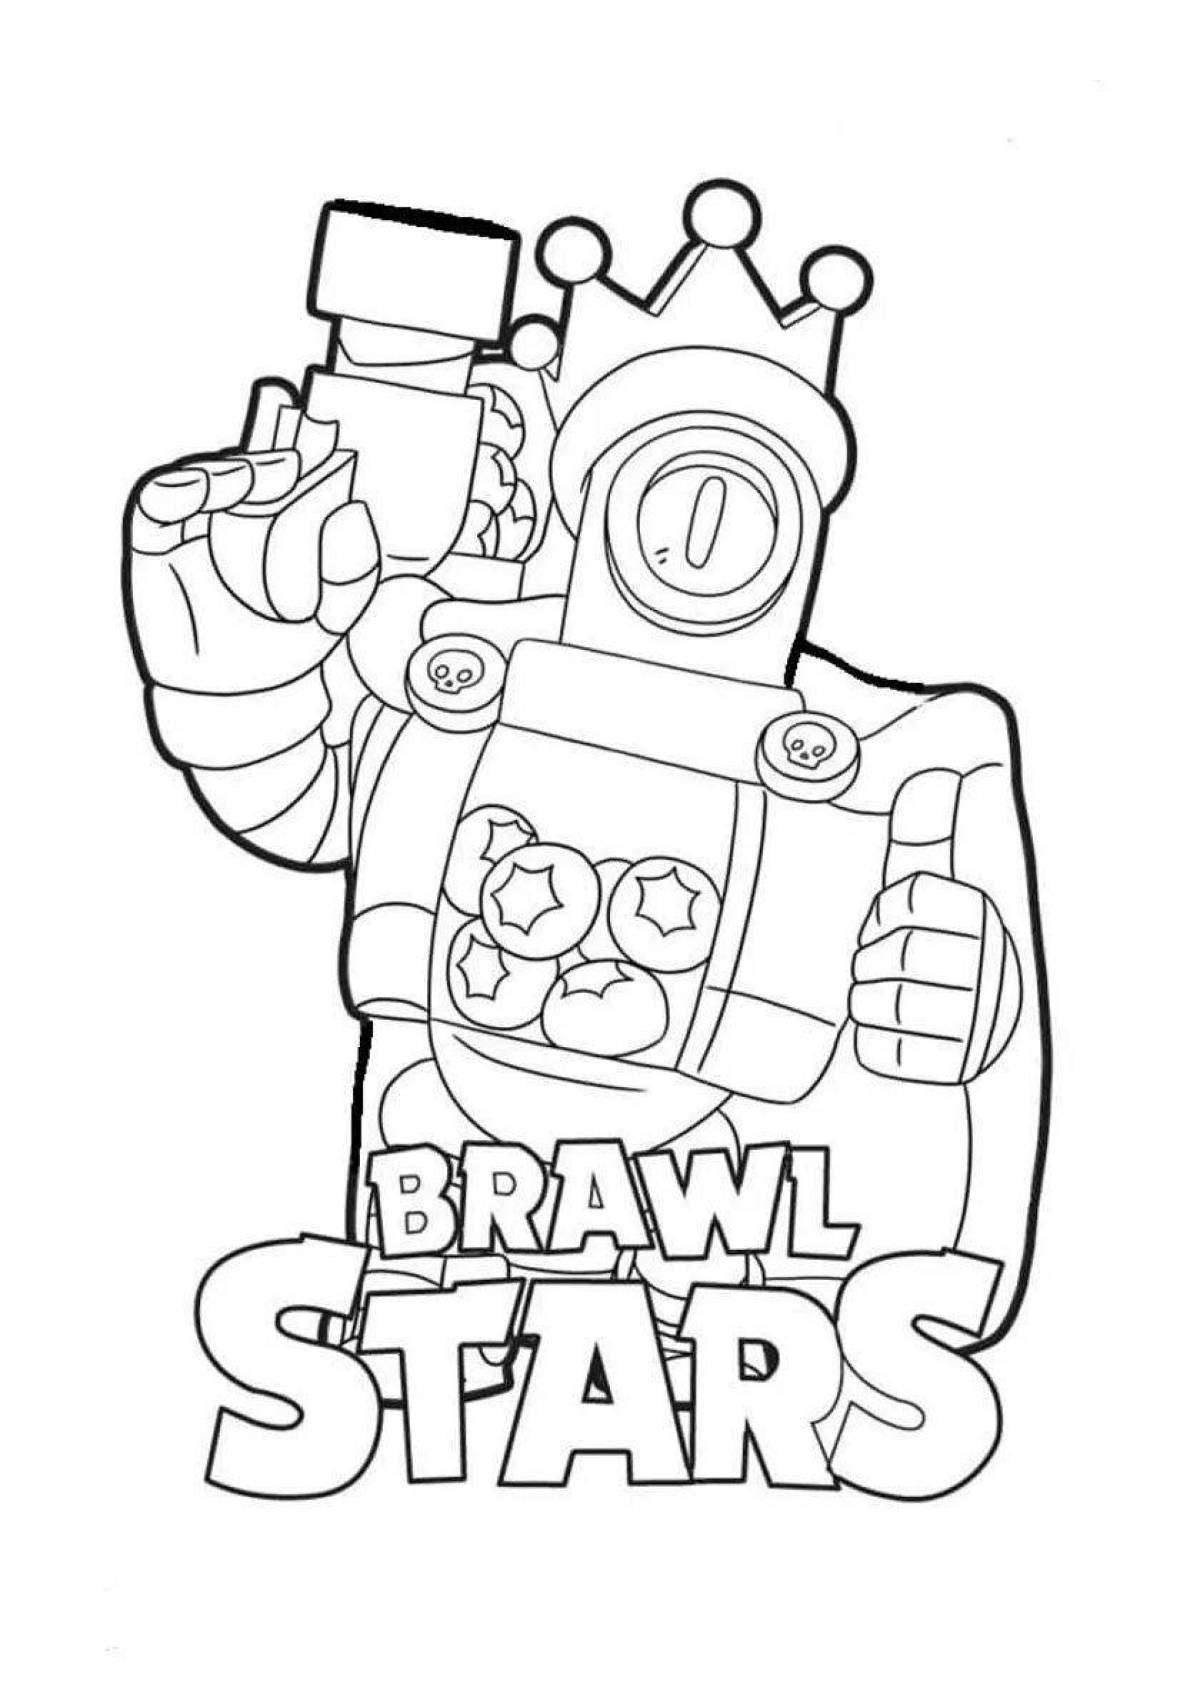 Bravo stars fun anti-stress coloring book